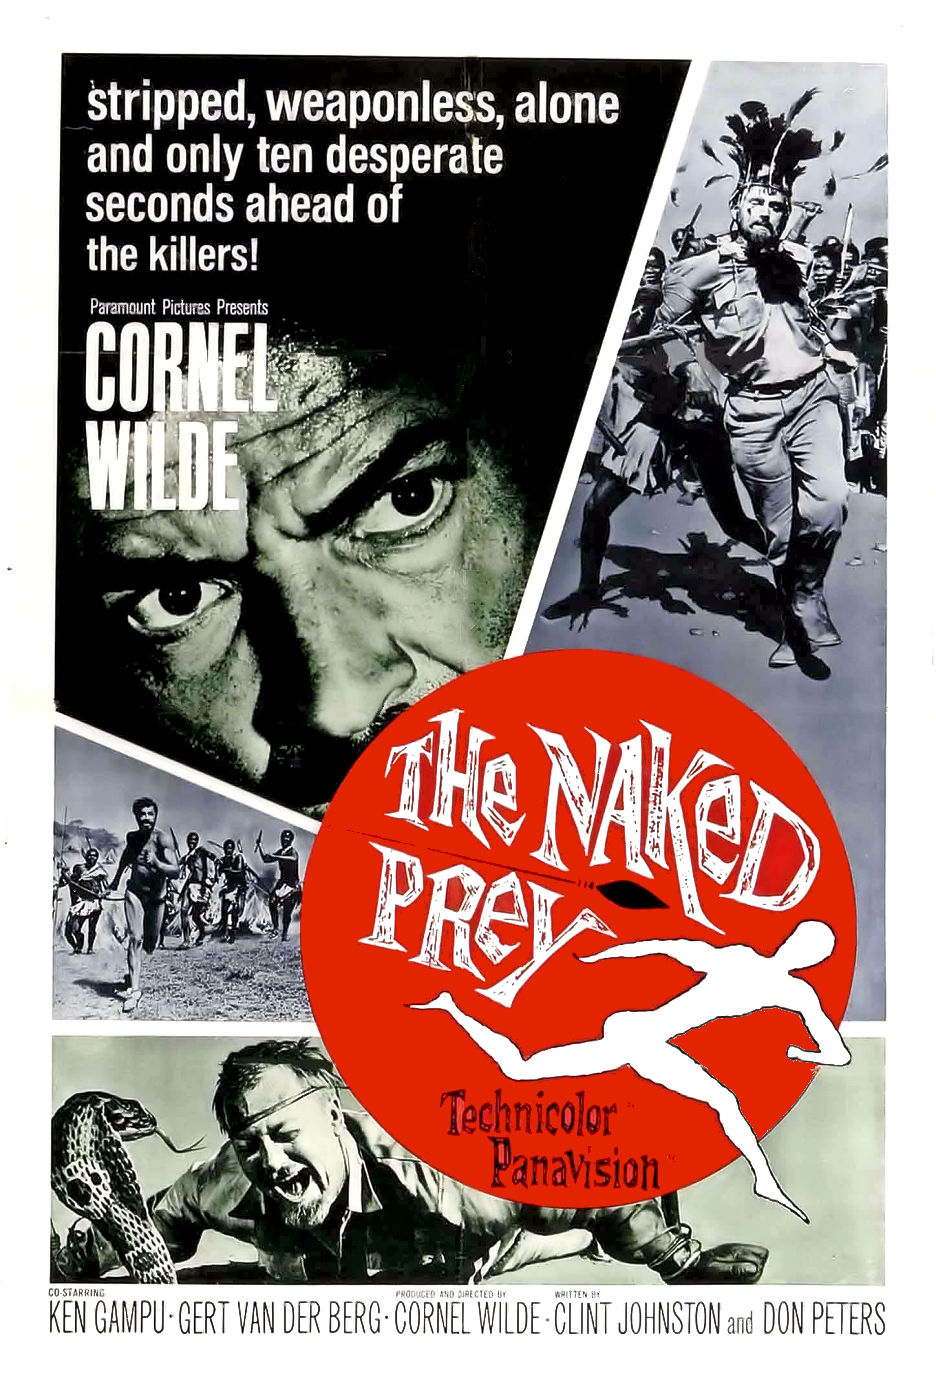 The Naked Prey (1965) ล่าหฤโหด